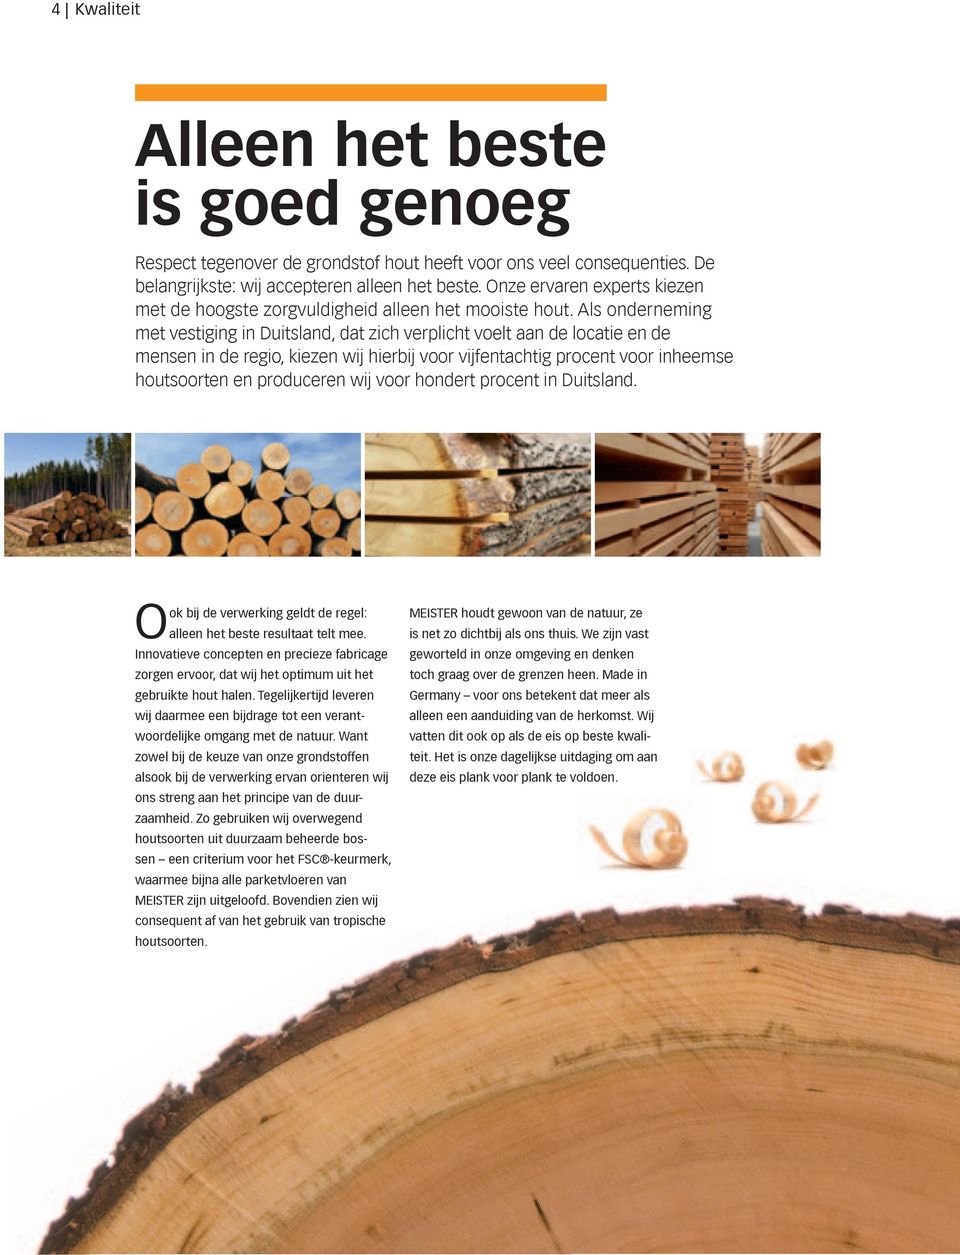 Als onderneming met vestiging in Duitsland, dat zich verplicht voelt aan de locatie en de mensen in de regio, kiezen wij hierbij voor vijfentachtig procent voor inheemse houtsoorten en produceren wij